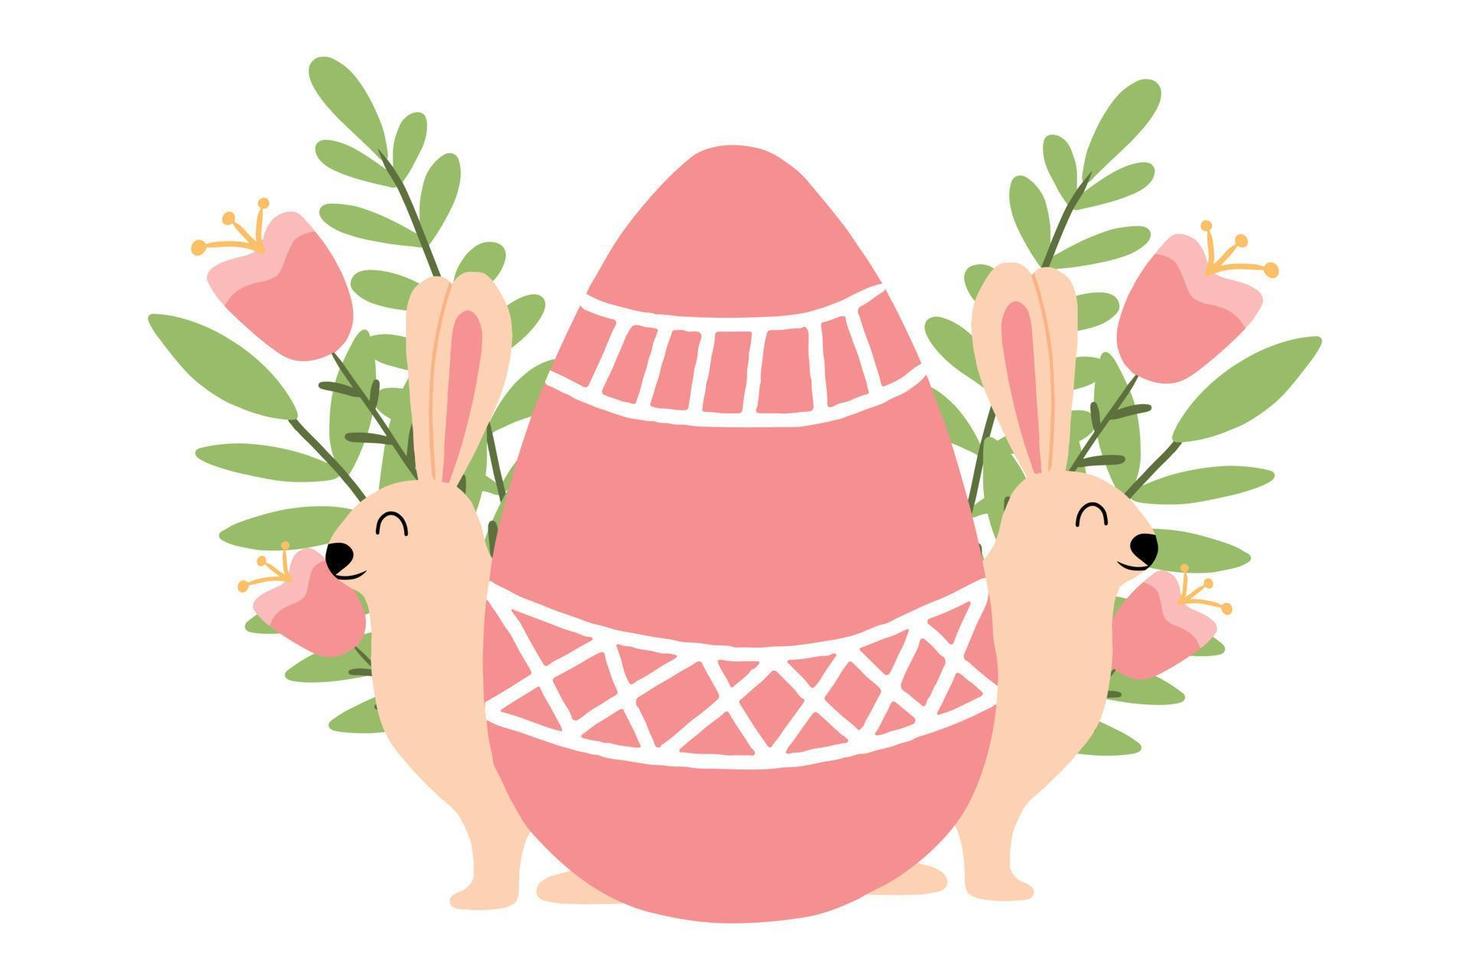 lapin de pâques avec illustration vectorielle d'oeufs. jolie carte postale pour pâques avec un lapin. lapin avec des oeufs, des fleurs et des feuilles. vecteur